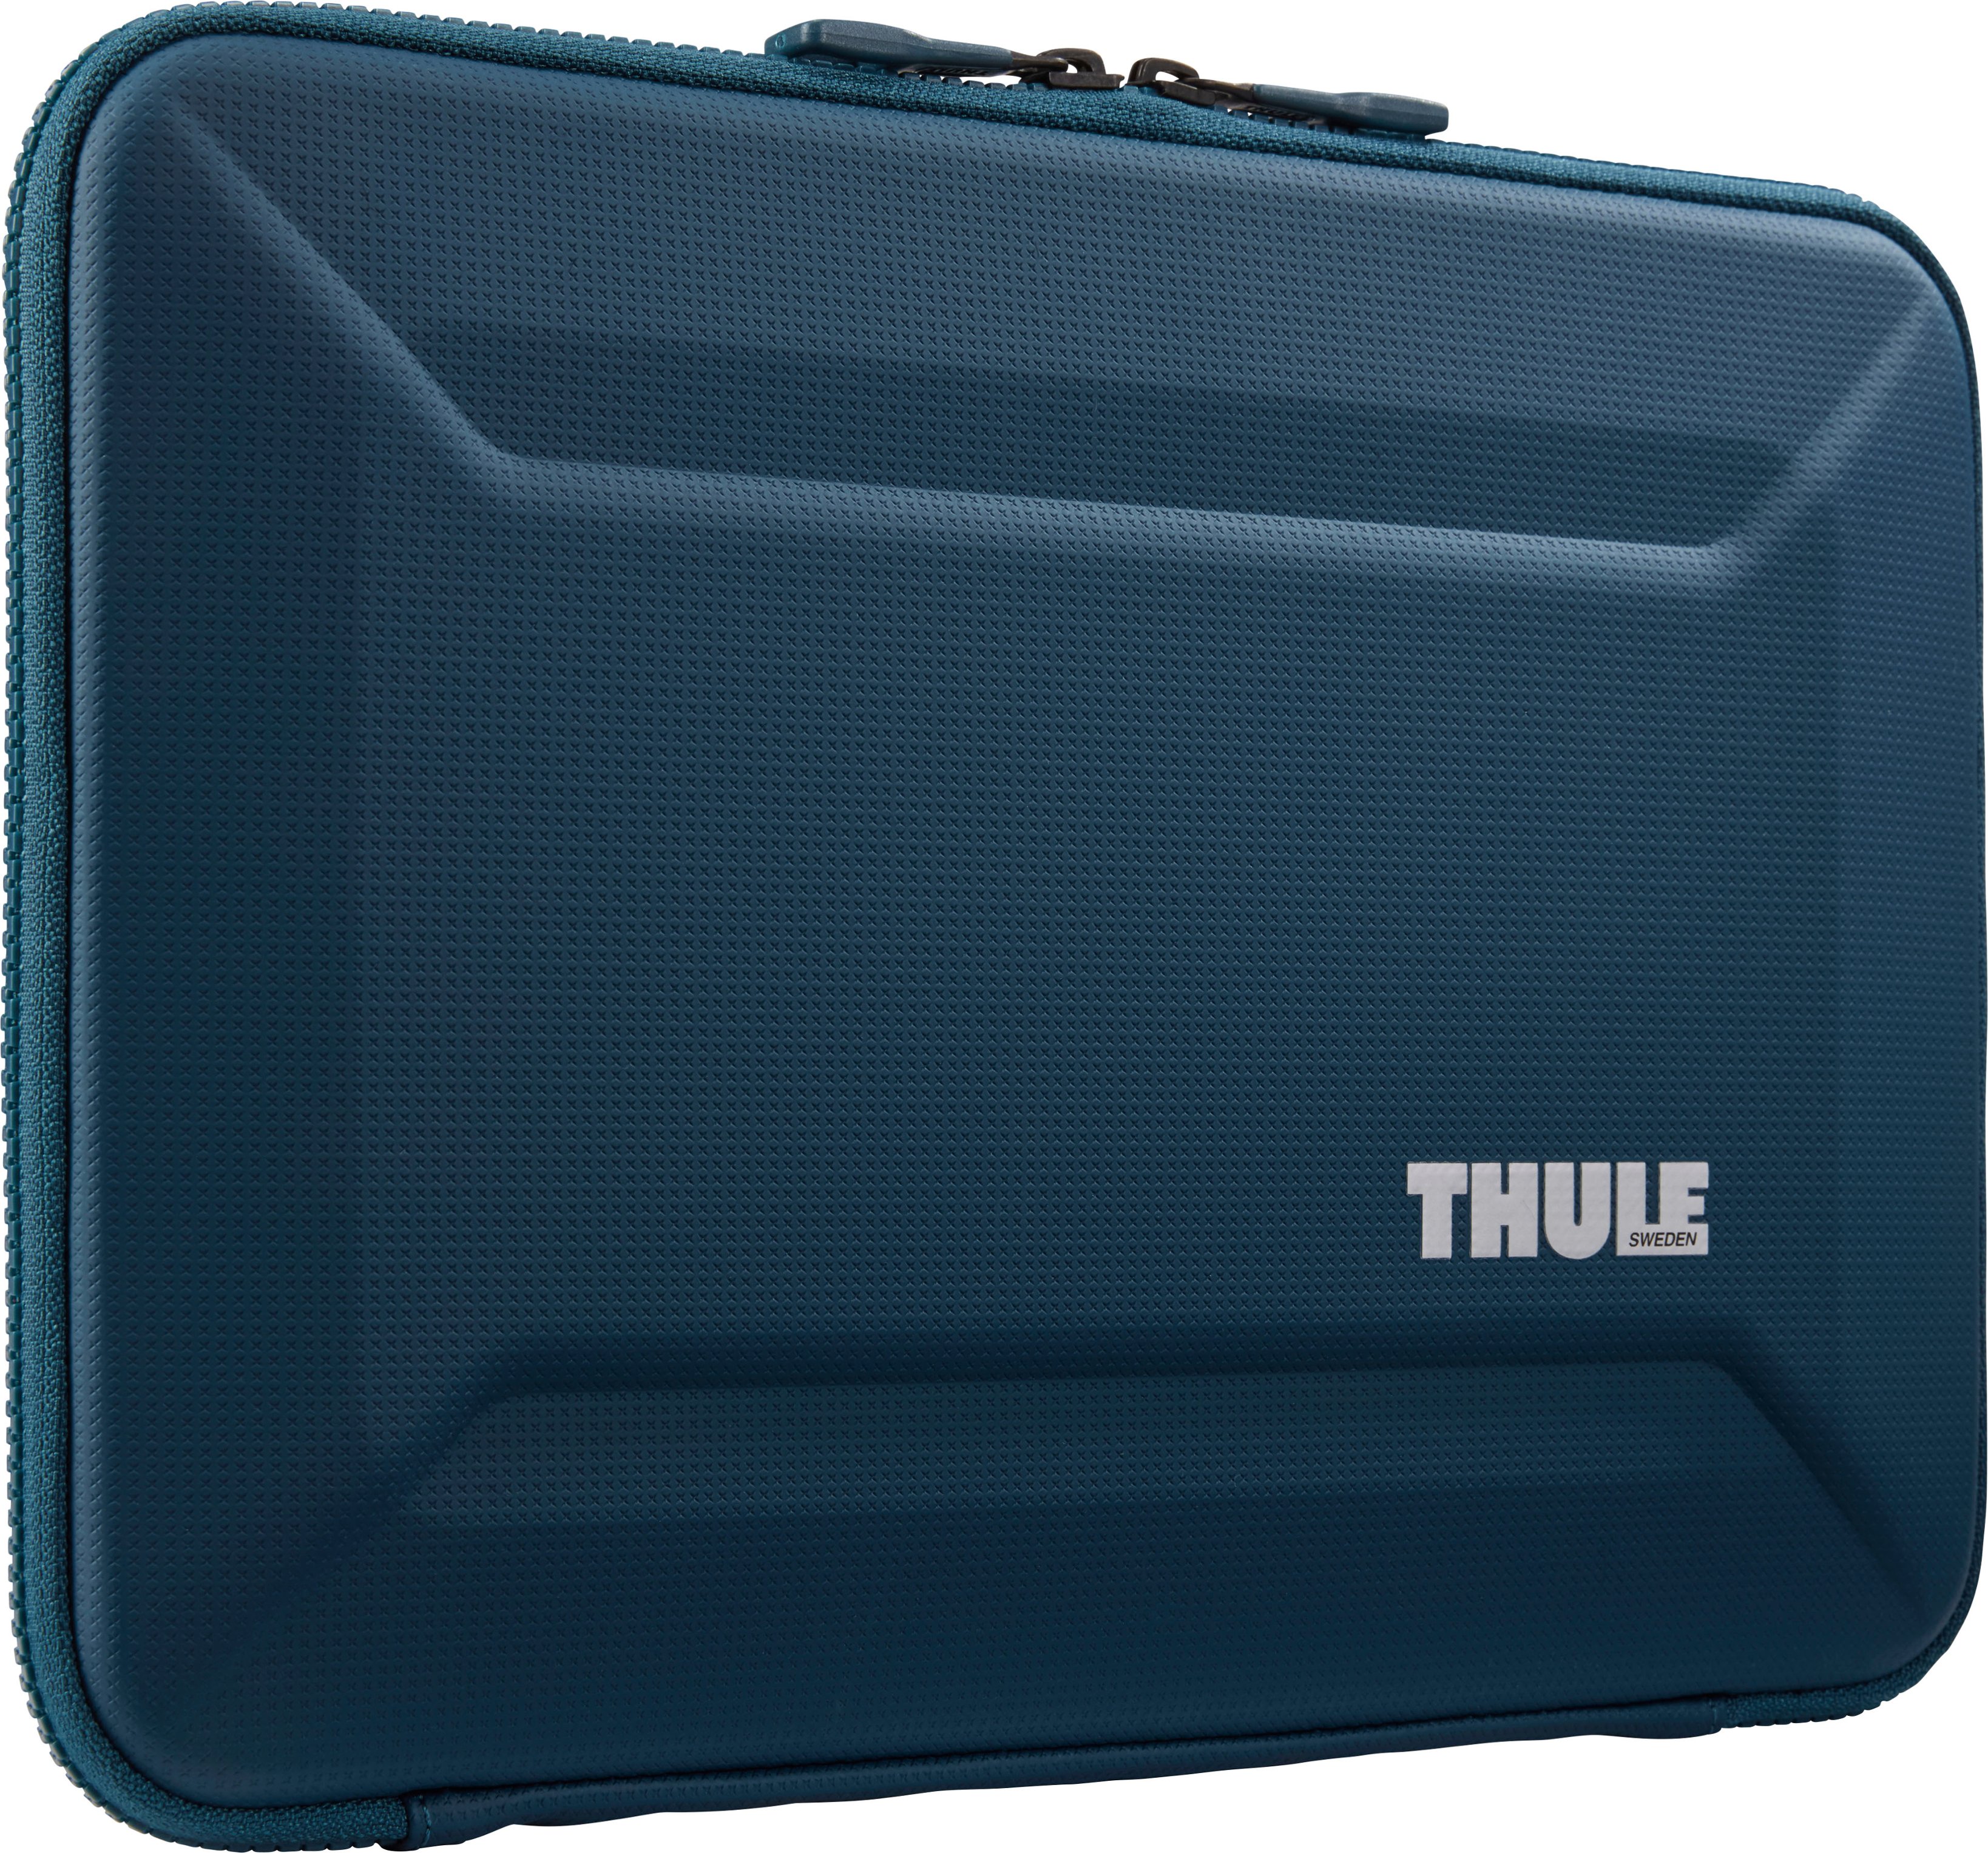 Back View: Thule - Gauntlet Laptop Sleeve Laptop Case for 14” Apple MacBook Pro, 13” Apple MacBook Pro, Air, PCs, Laptops & Chromebooks - Blue